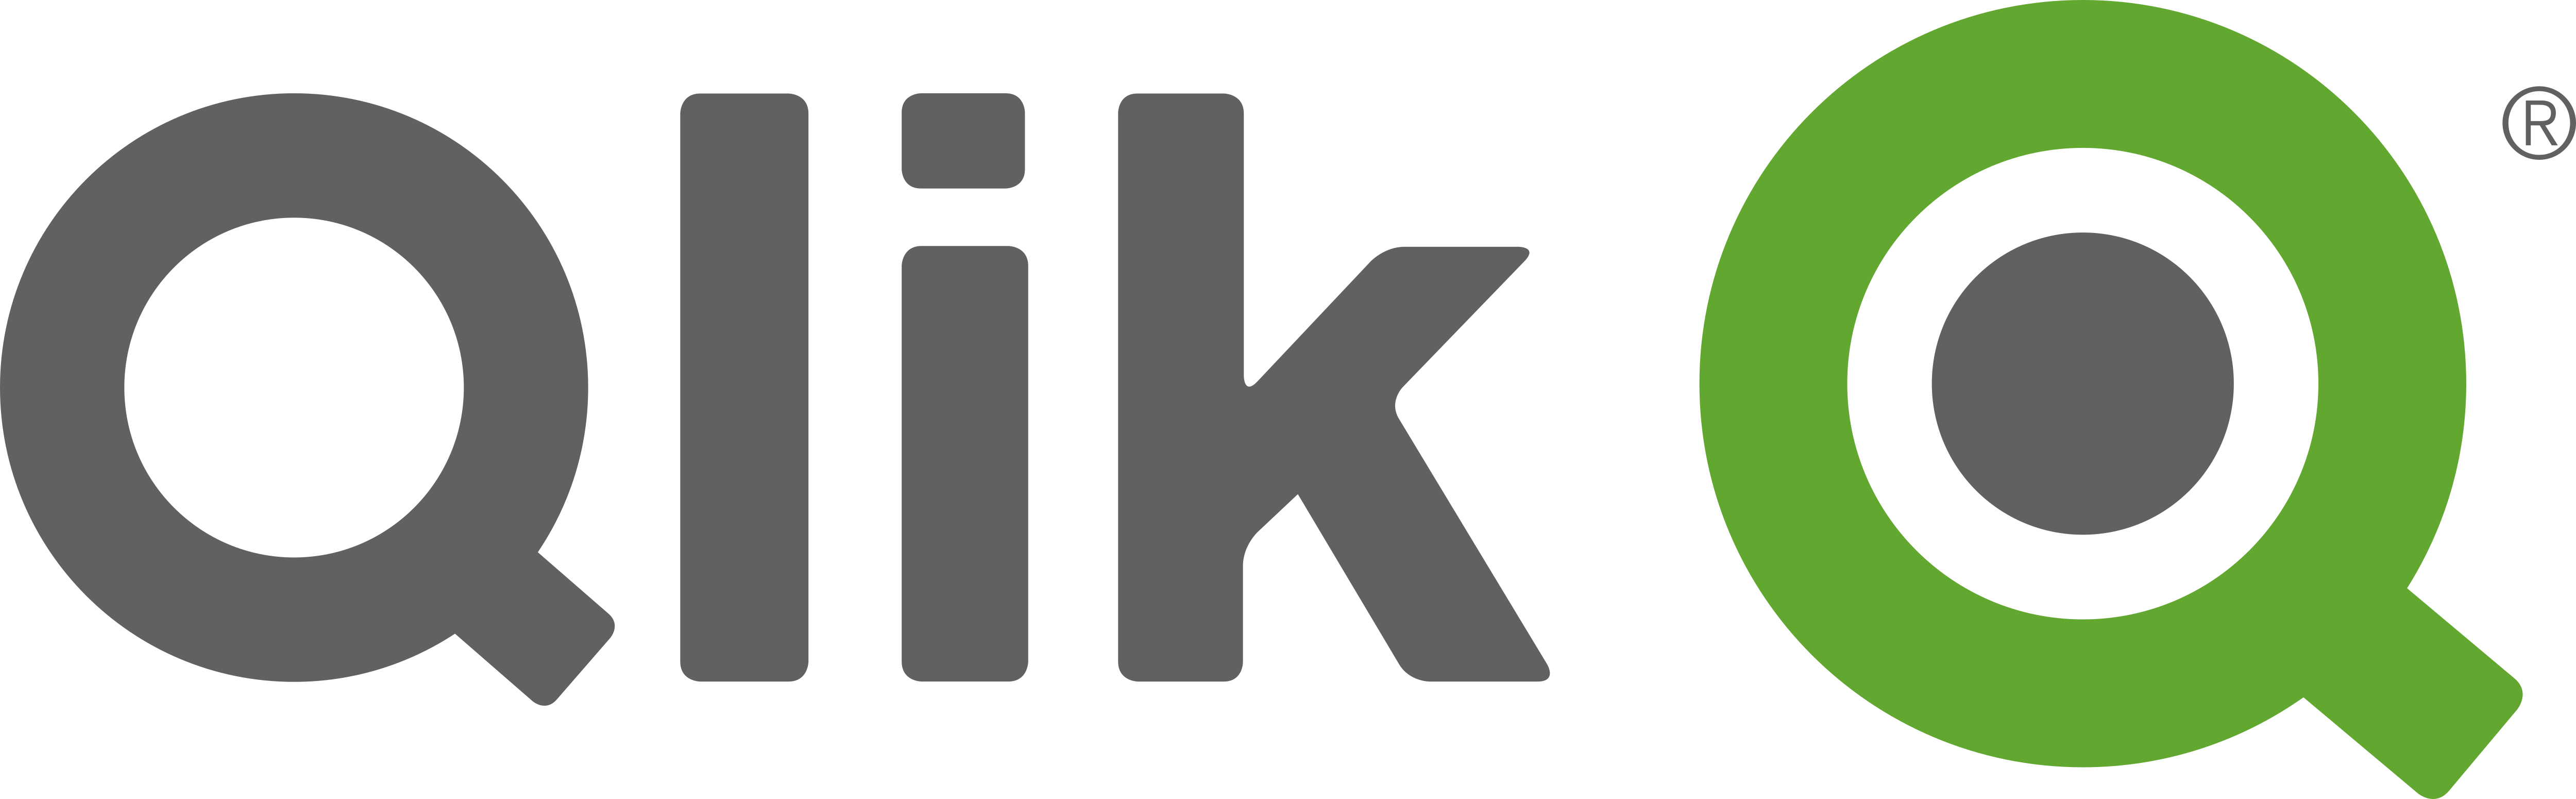 Logo Qlik tools